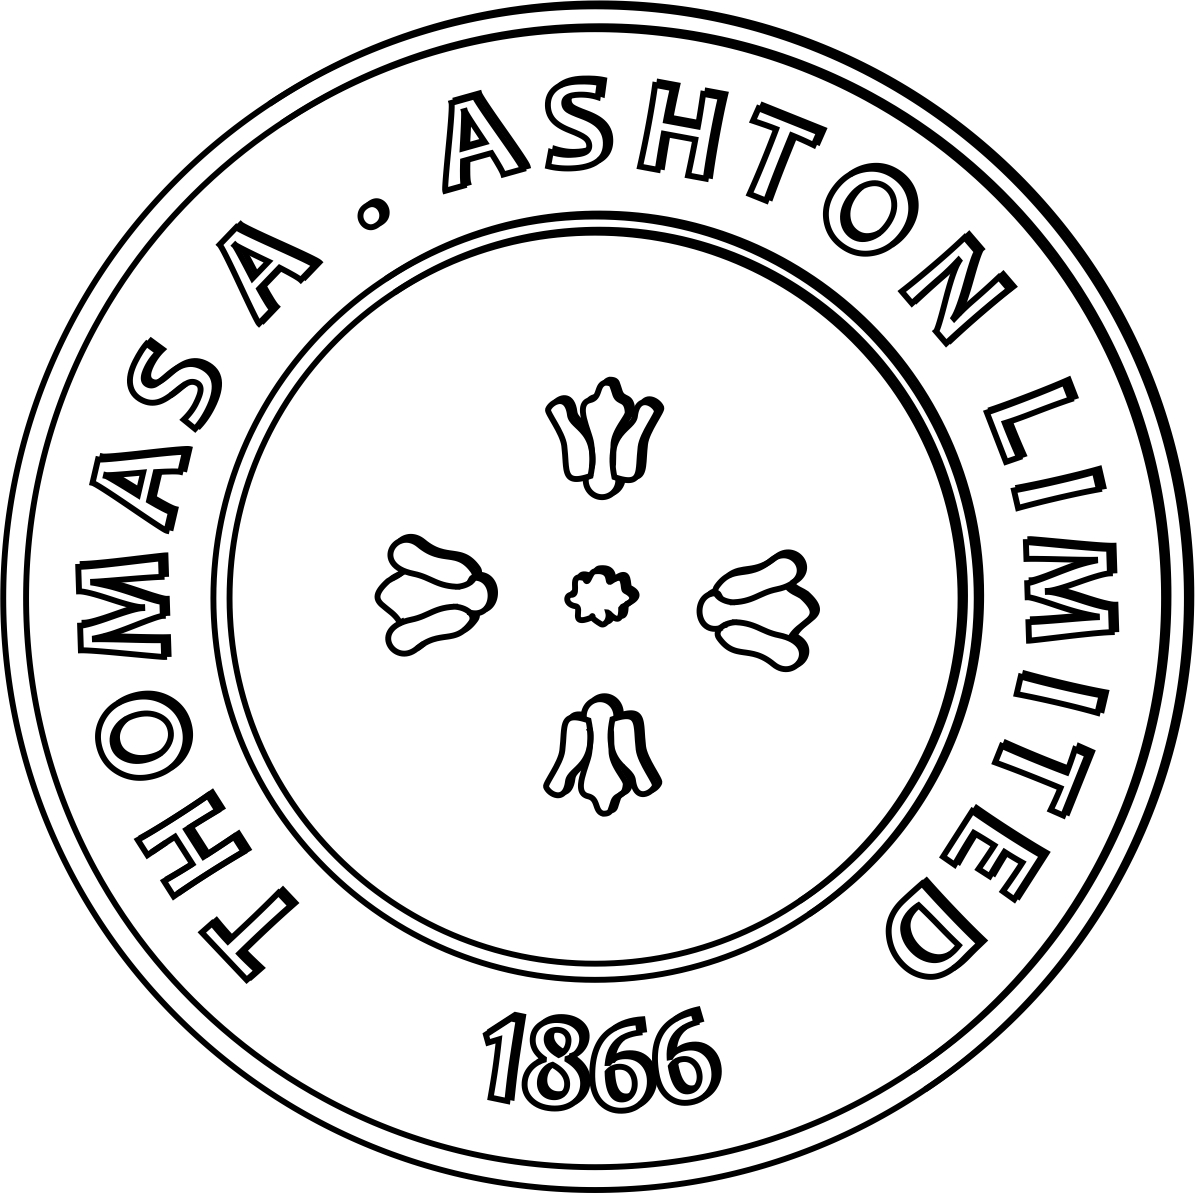 Thomas A. Ashton Ltd logo